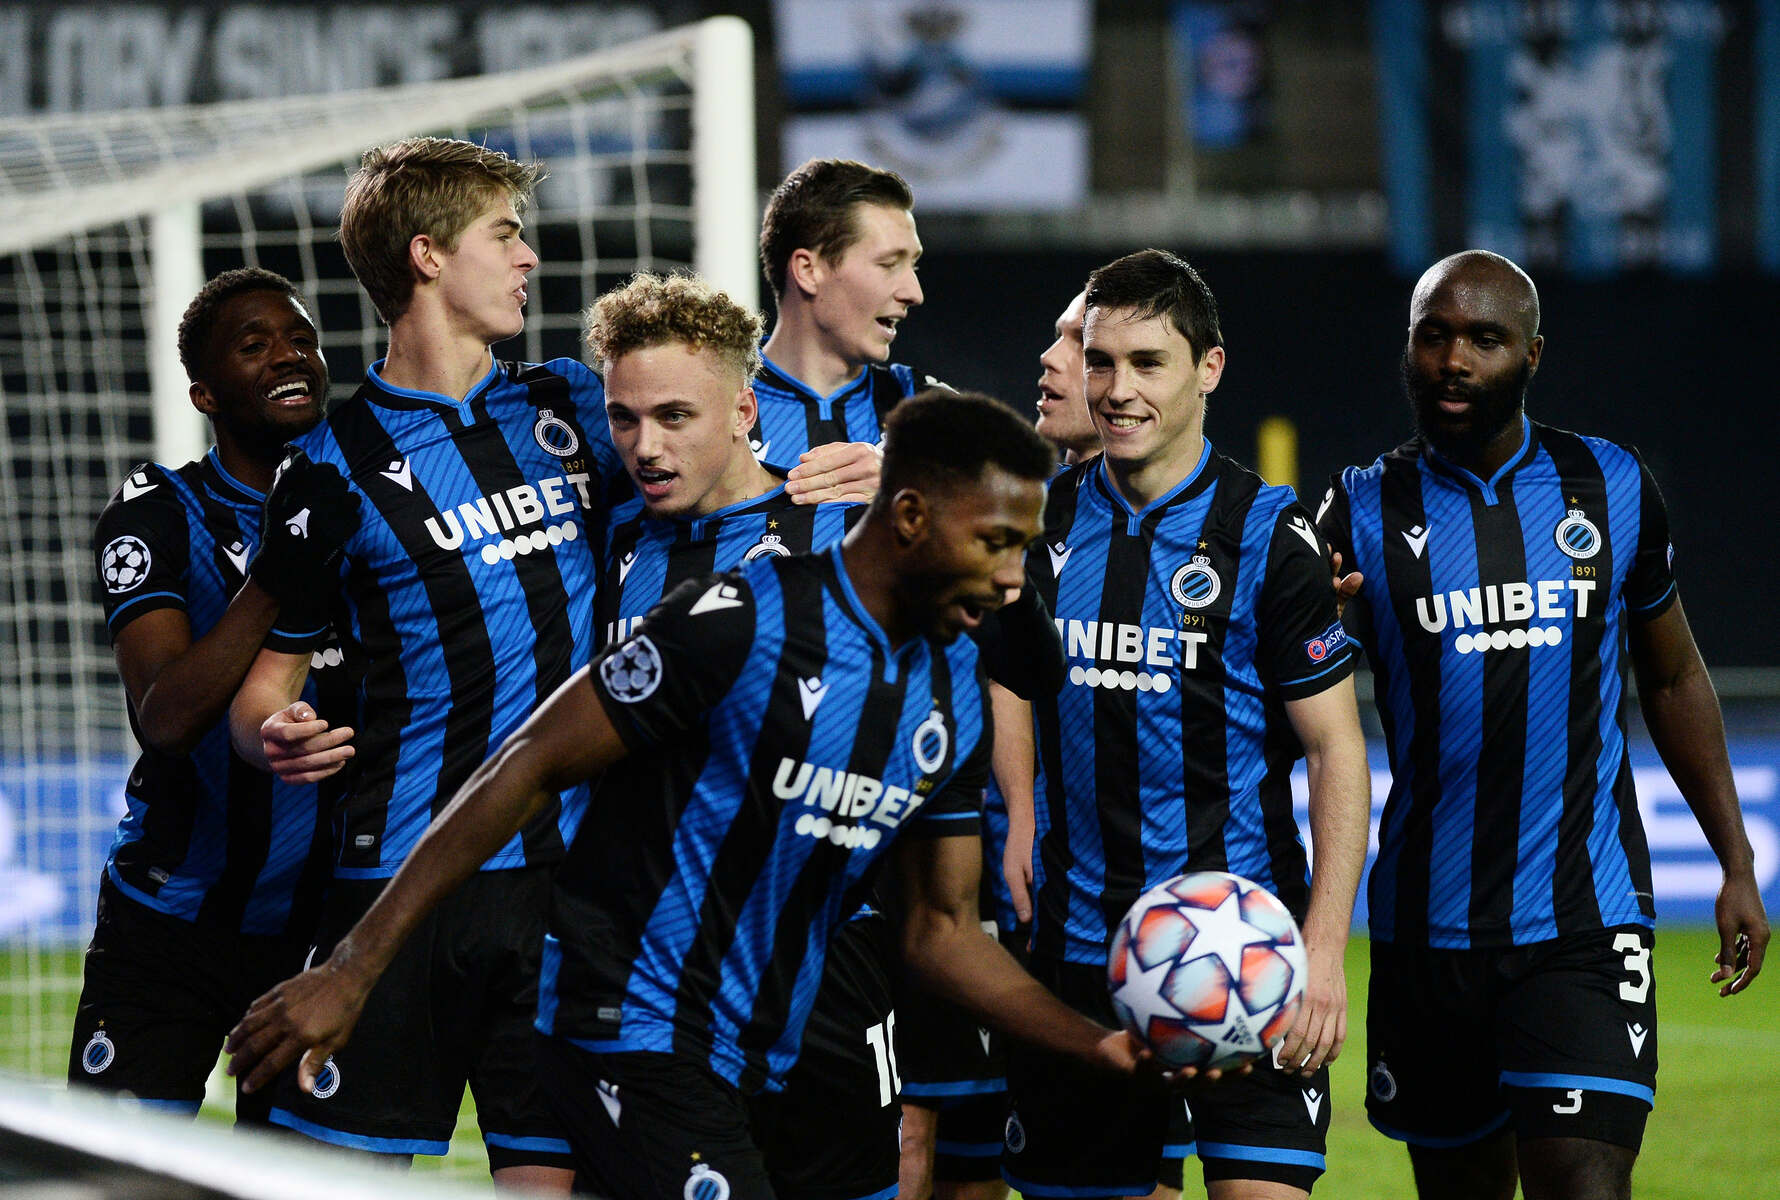 Club Brugge - KV Kortrijk: team selection